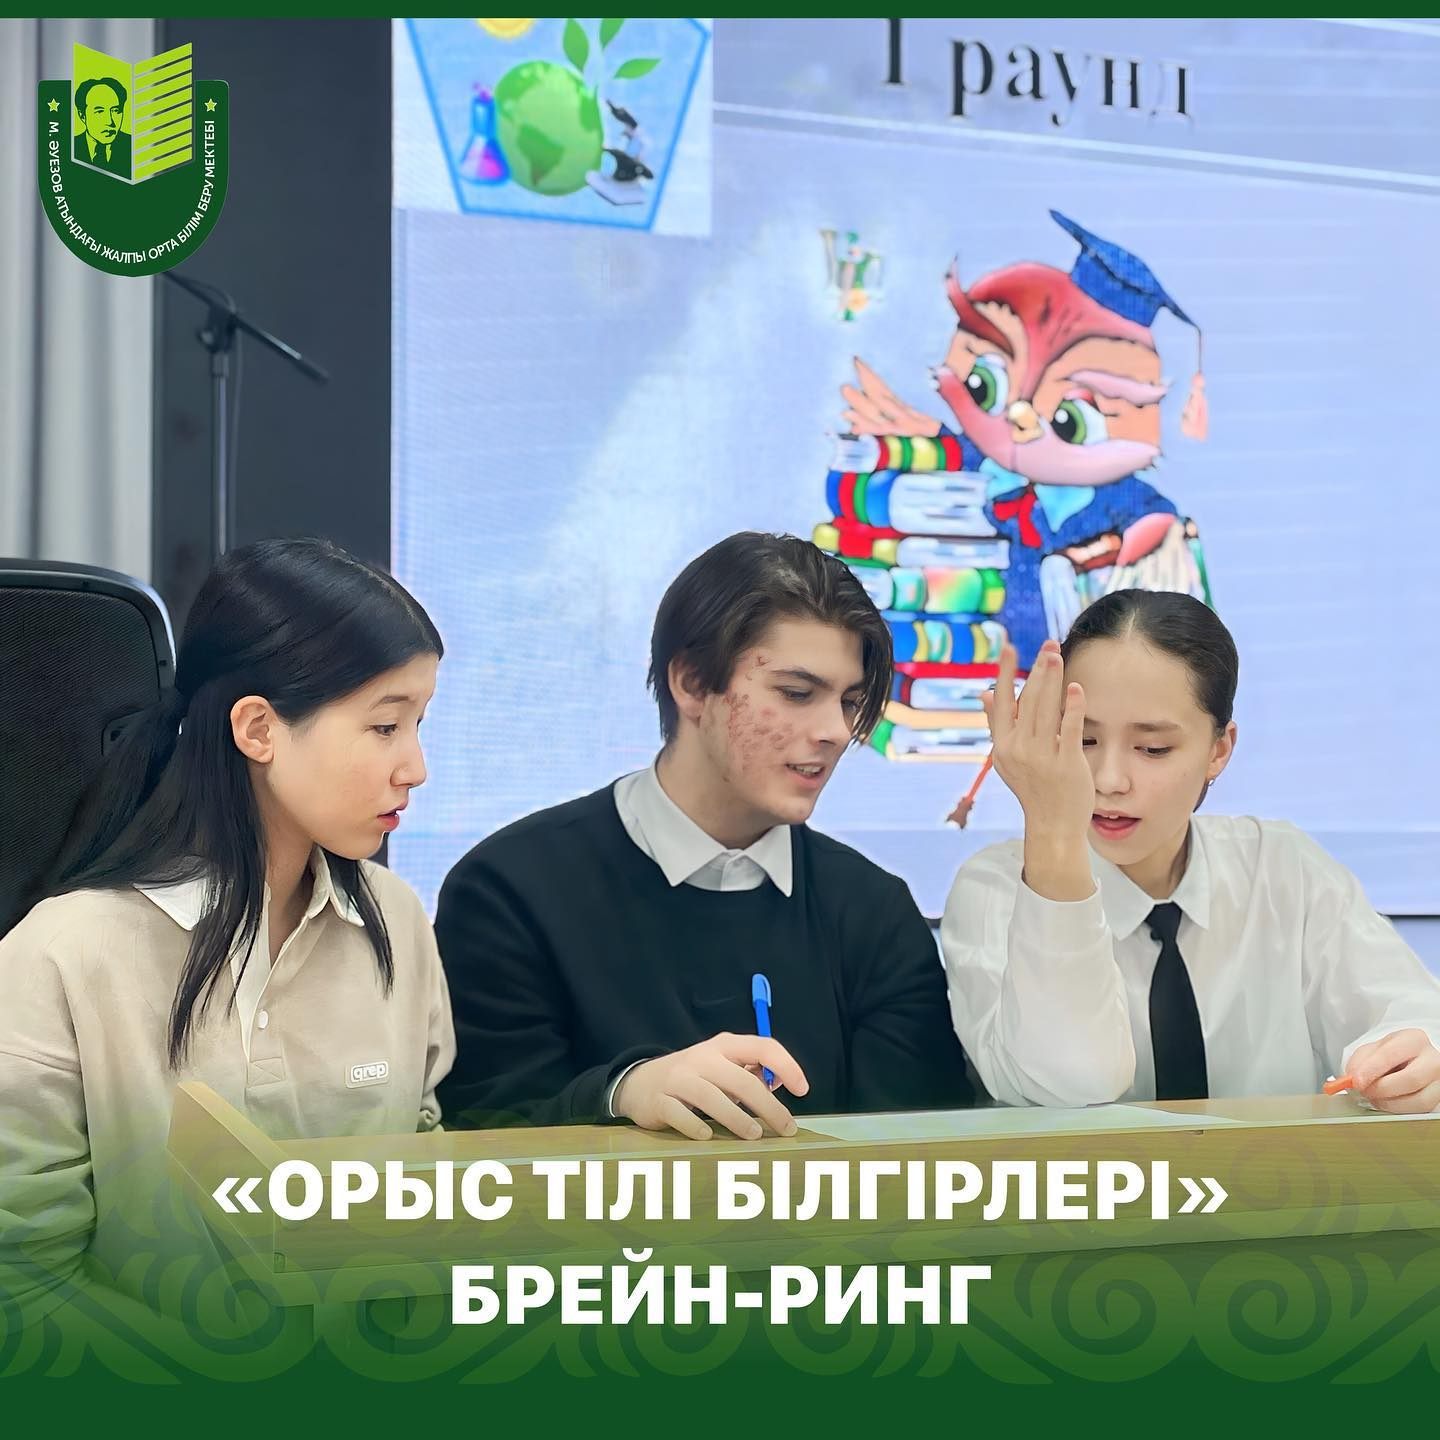 17 января в рамках Недели русского языка и литературы был проведен брейн-ринг «Знатоки русского языка» среди учащихся 8-х классов.